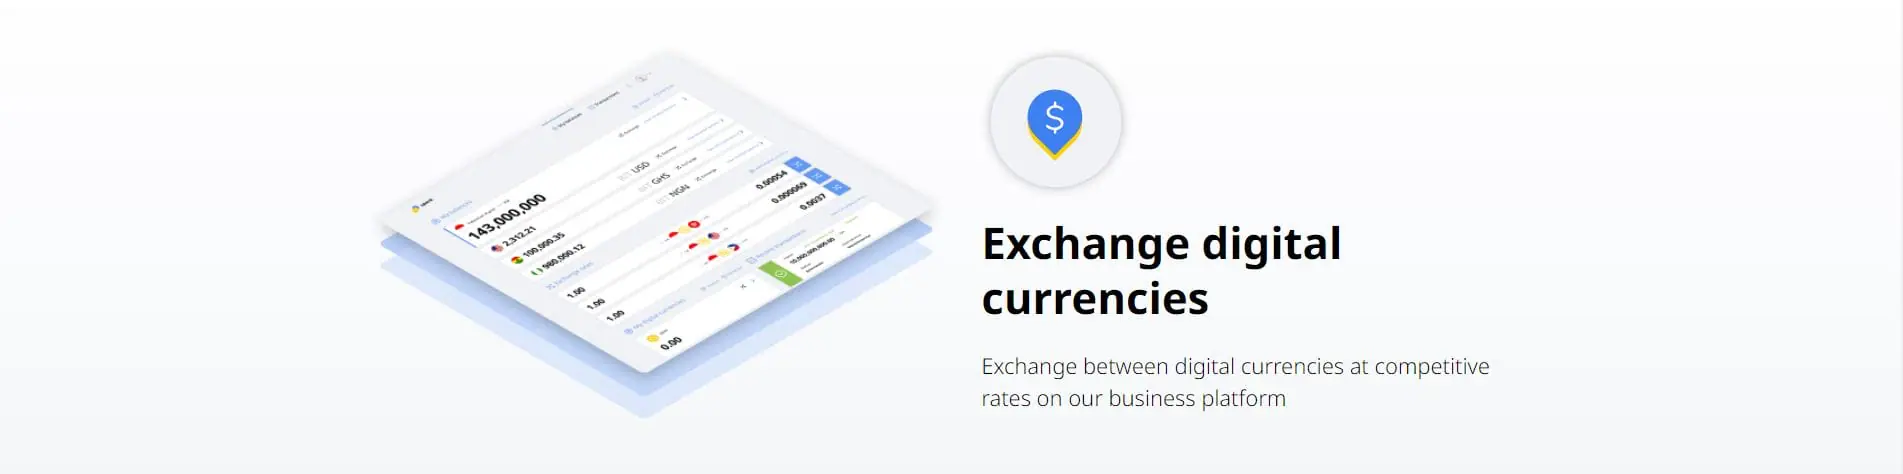 Op de SparkDEX kun je metde verschillende digitale valuta handelen